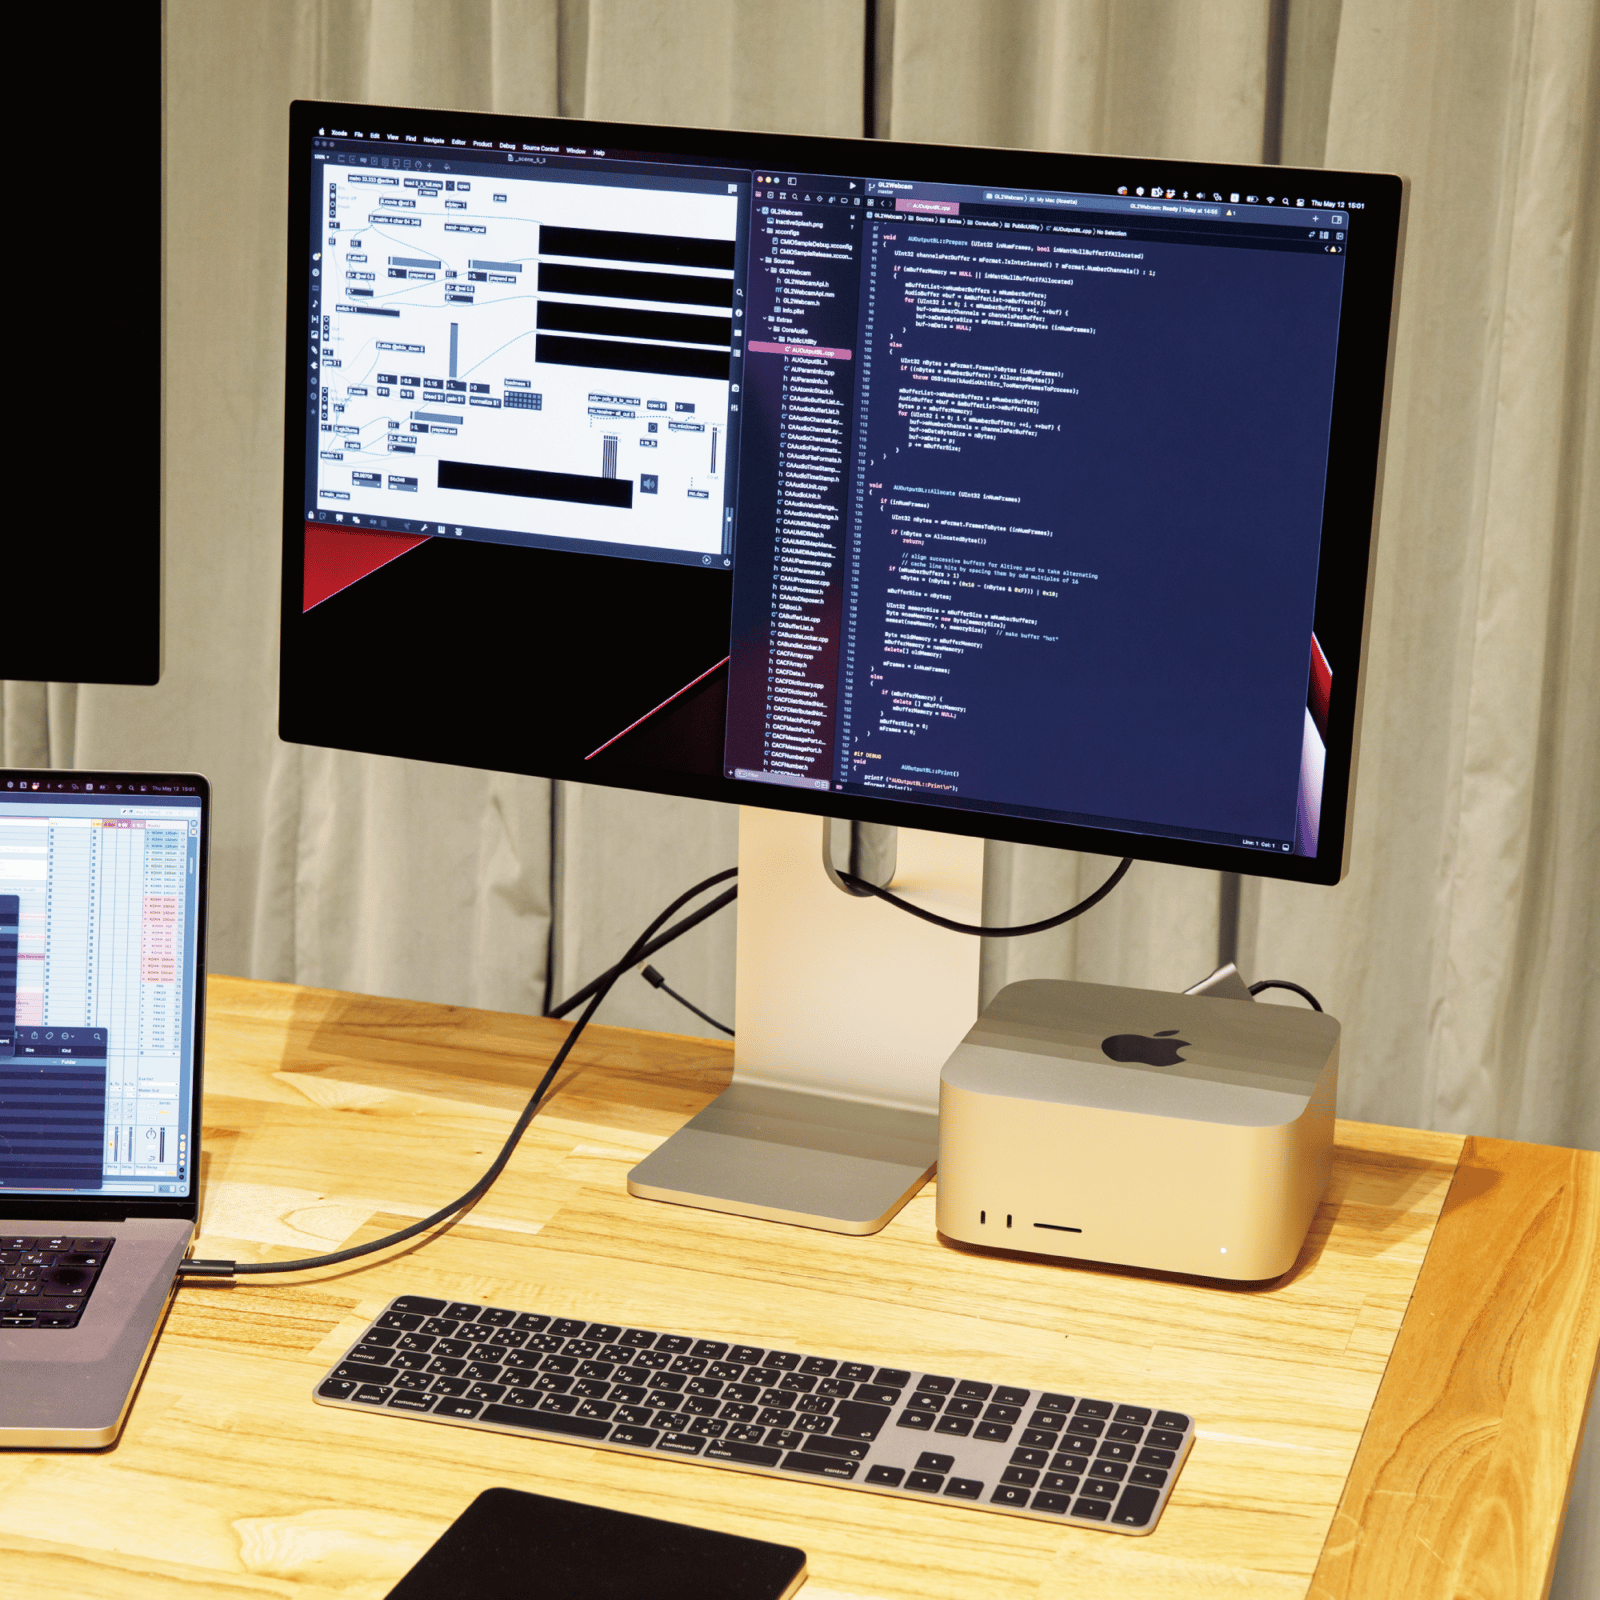 真鍋大度さんの愛用品「Apple Pro Display XDR」と「Mac Studio」。ブログラム制作のメインは「M1 Macbook Pro Max」